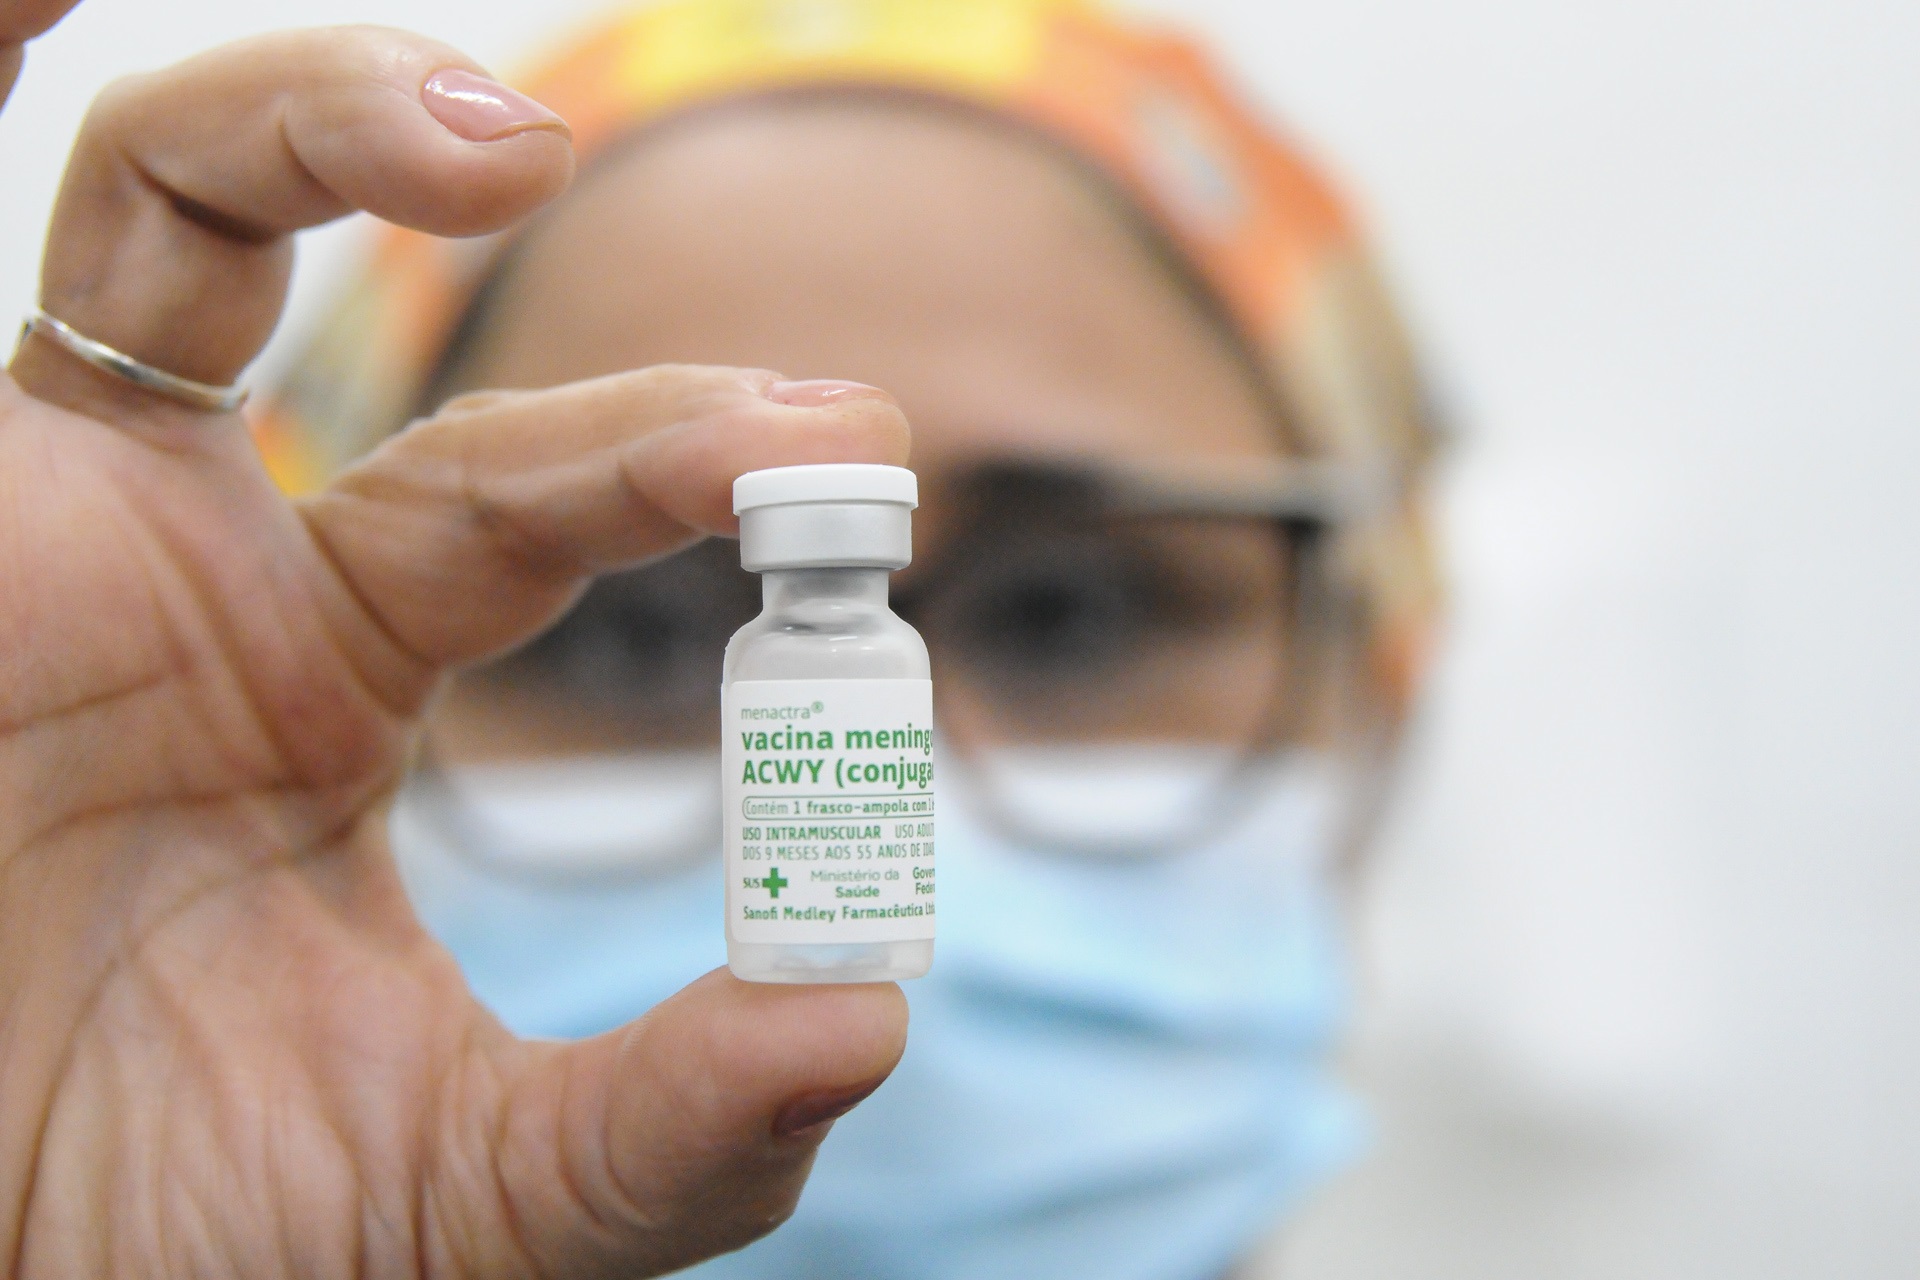 Saúde da Paraíba amplia oferta de vacinas meningocócica ACWY e de HPV4 para crianças e adolescentes